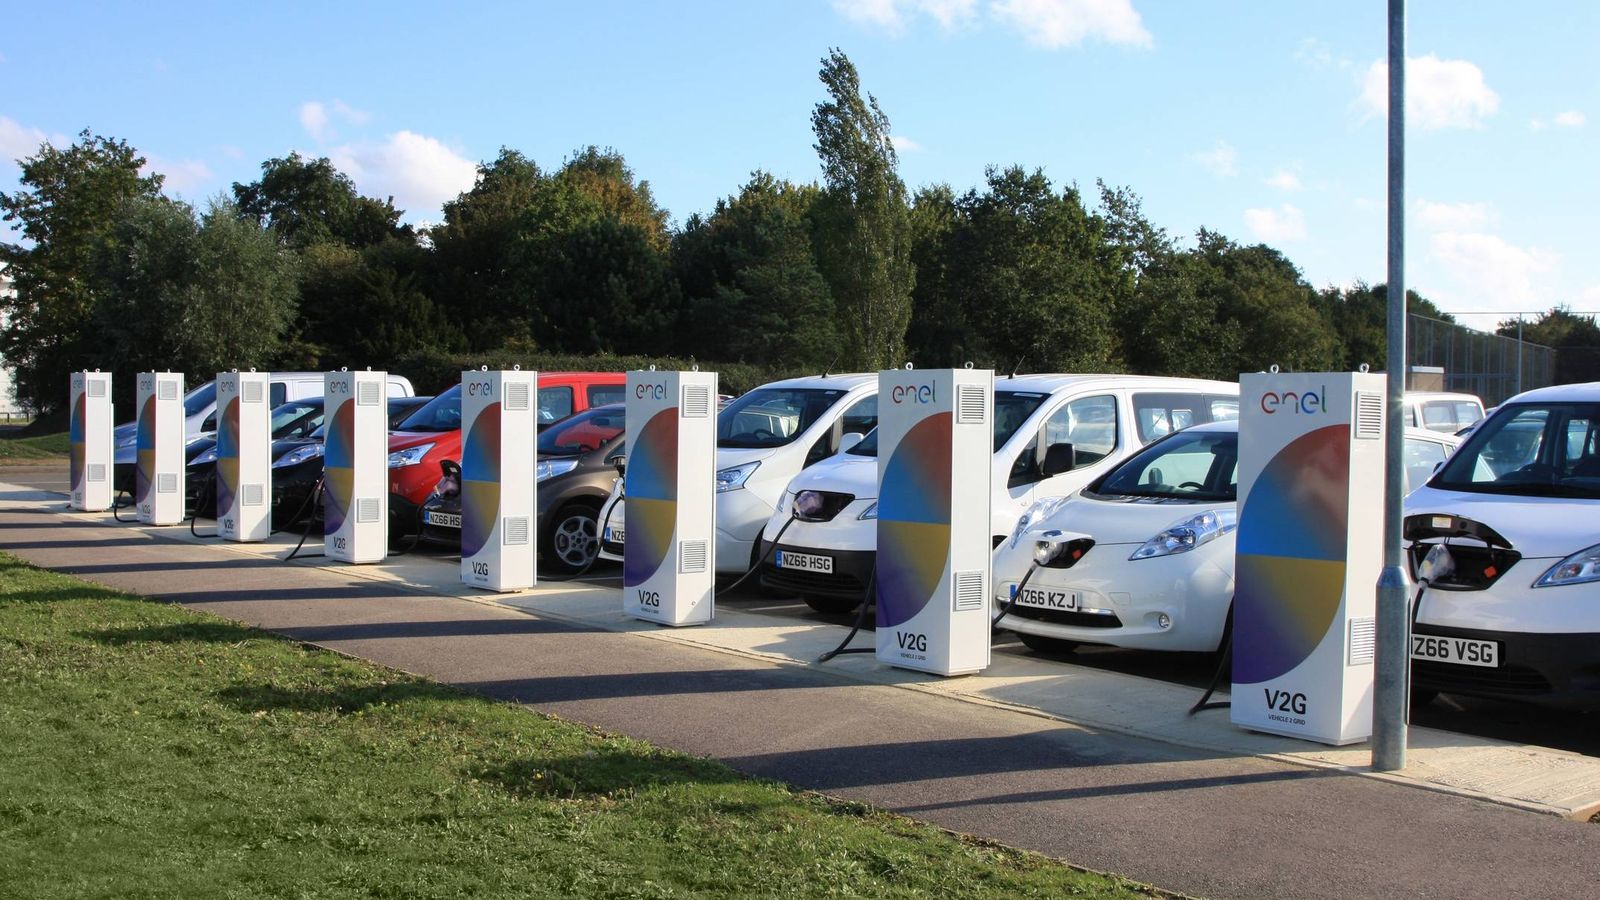 Foto: La alianza Renault-Nissan apuesta por el vehículo eléctrico, con el Nissan Leaf y el Renault Zoe, entre otros.